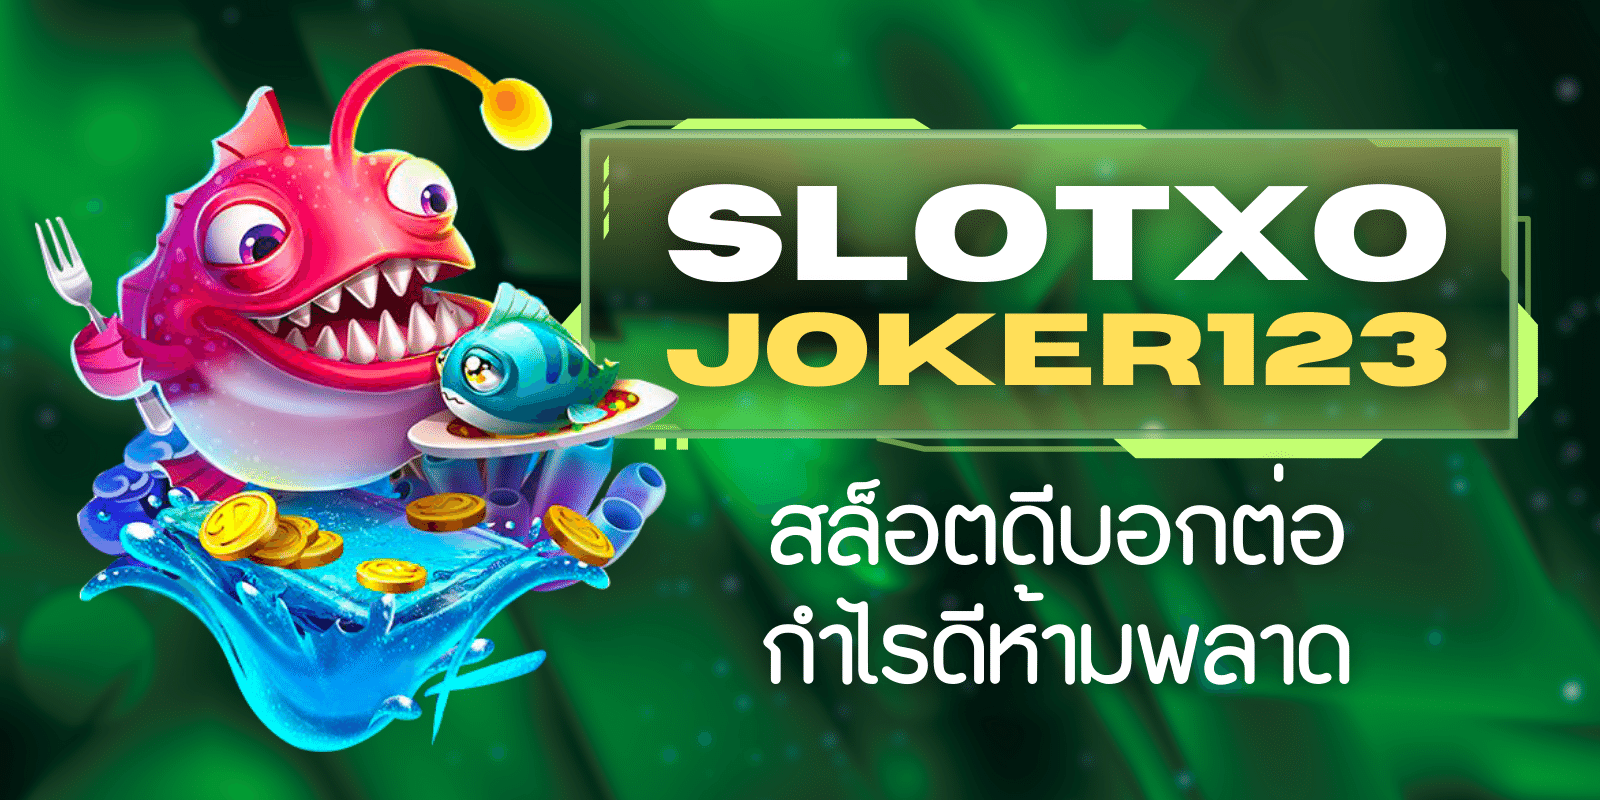 slotxo joker123 สล็อตดีบอกต่อ กำไรดีห้ามพลาด